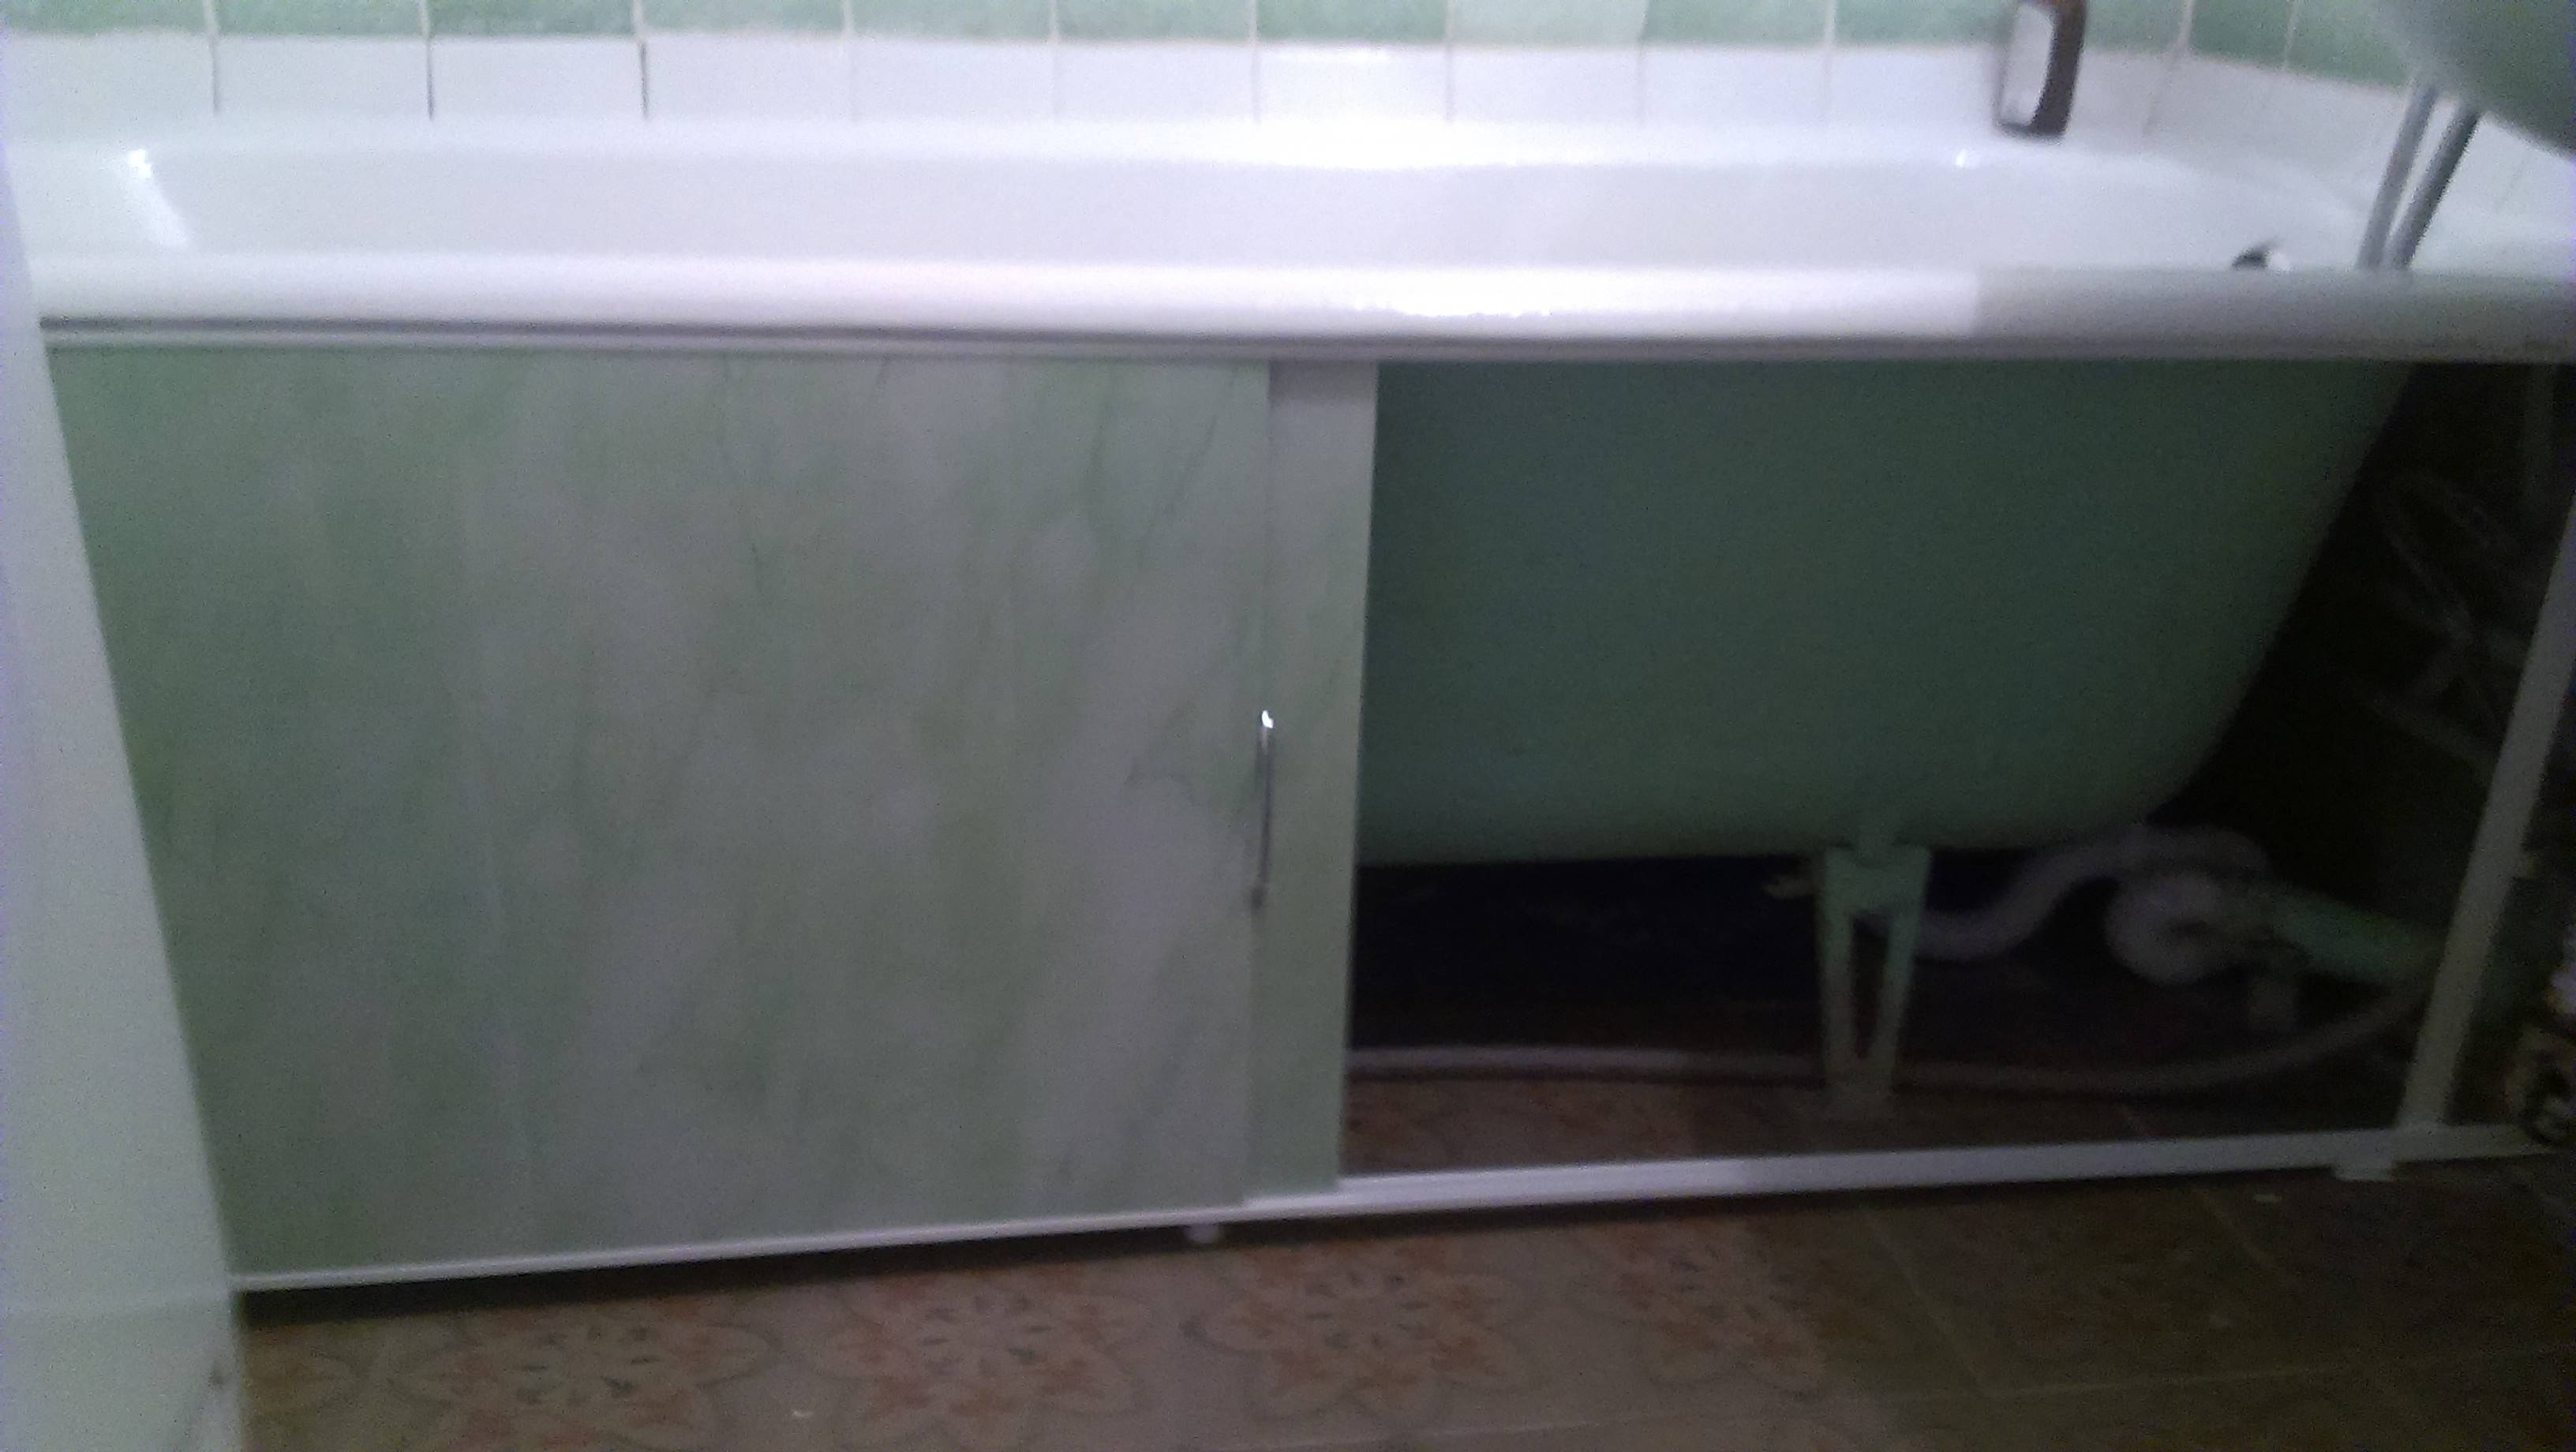 Как закрыть под ванной пластиковыми панелями - инженер пто